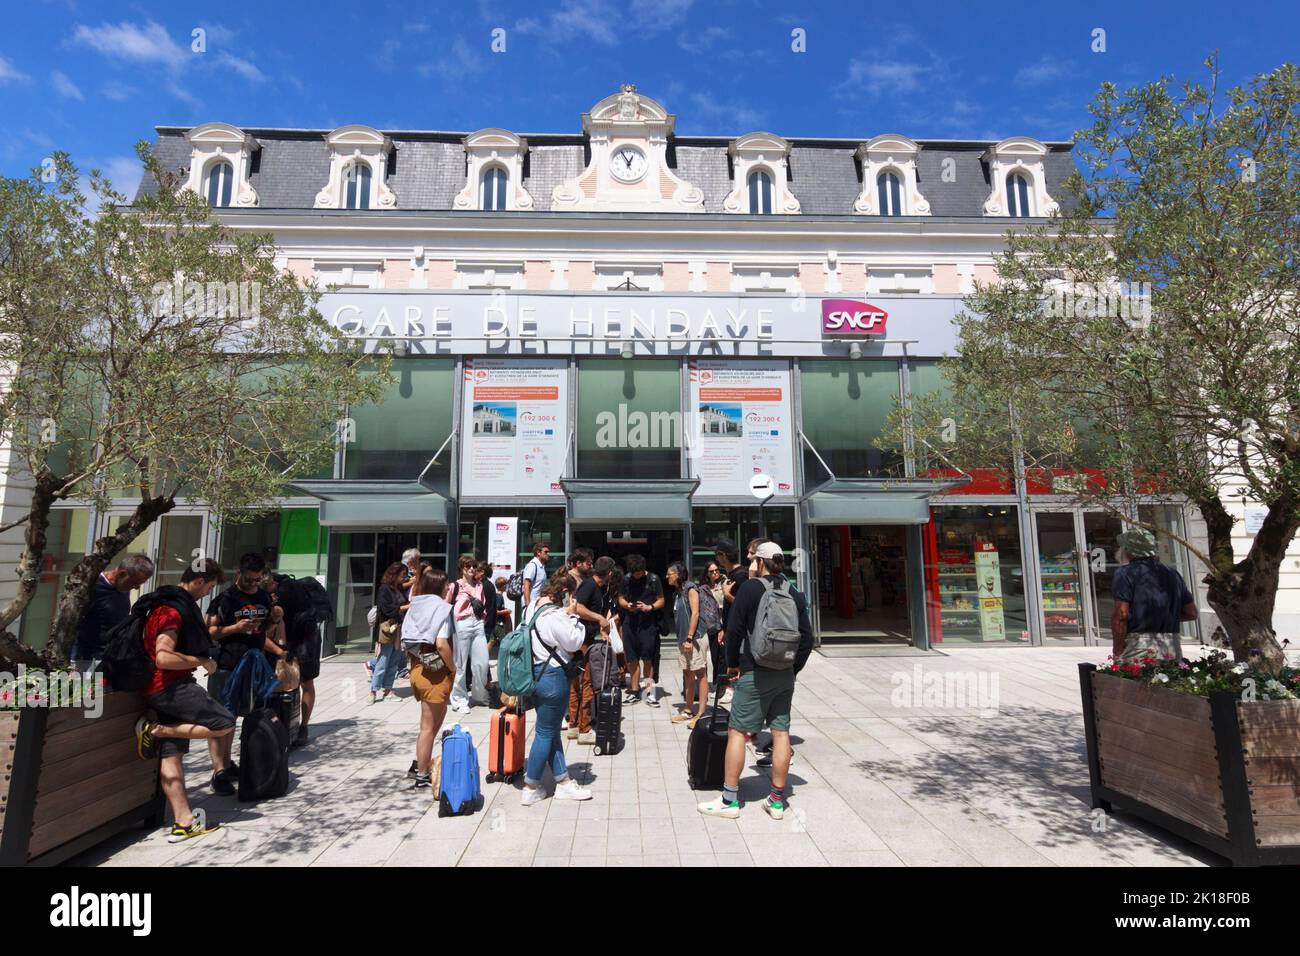 Hendaye, País Vasco Francés, Francia : Un grupo de personas se encuentra fuera de la estación de ferrocarril Gare d'Hendaye. Foto de stock